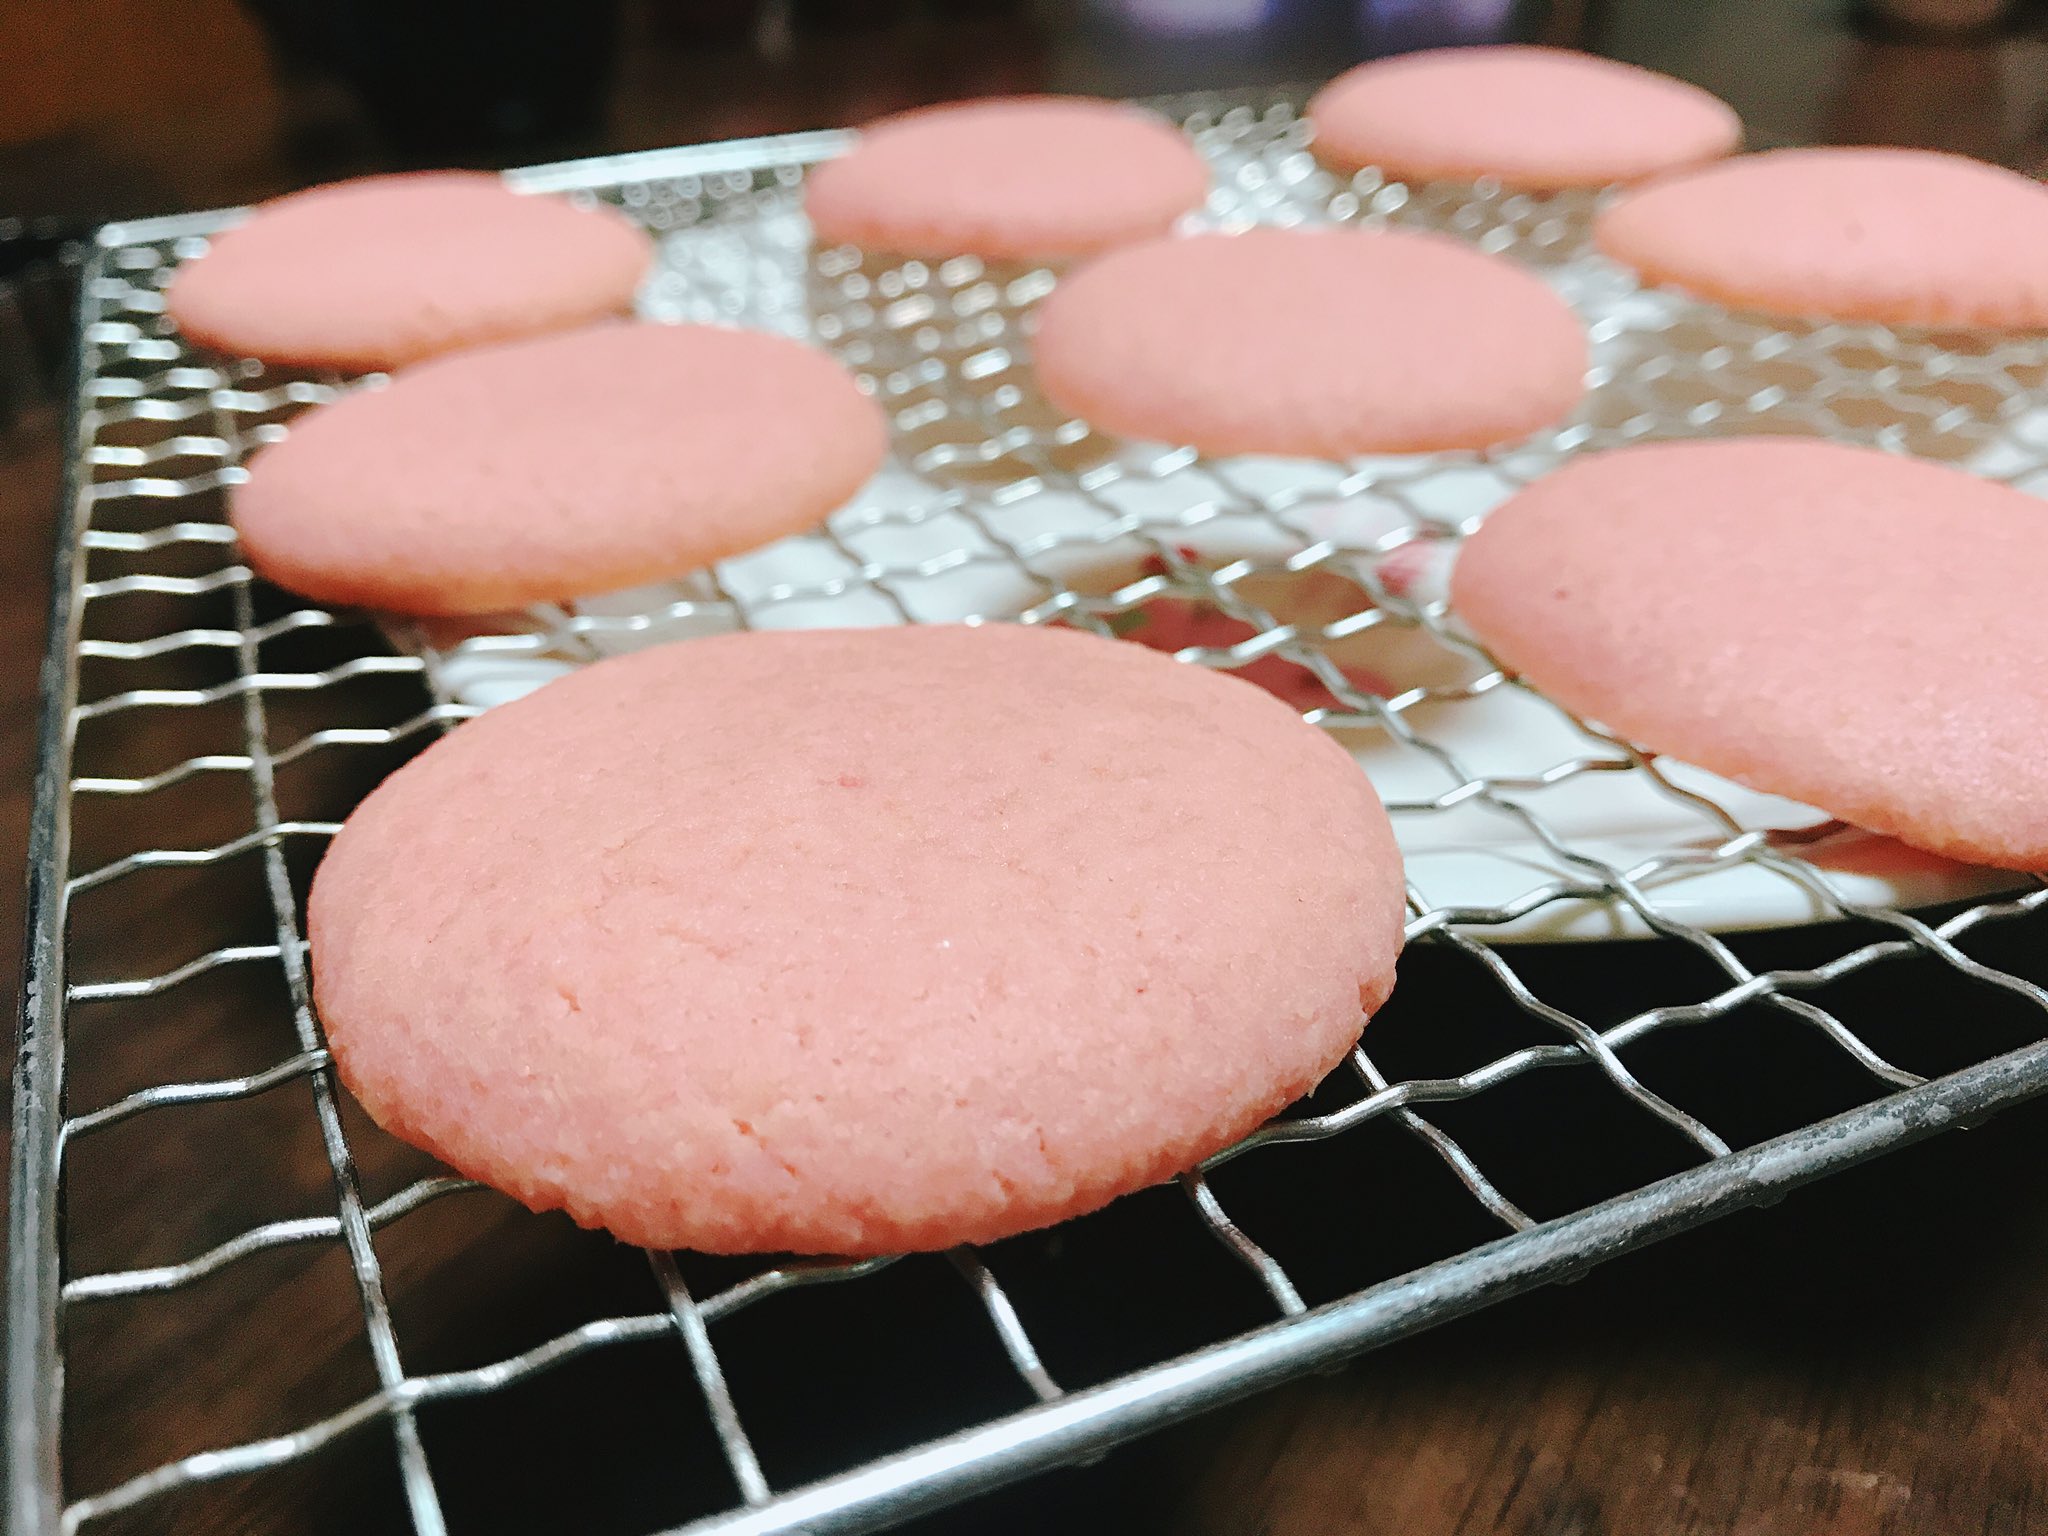 Misaki お菓子作り バタークリーム消費のために ソフトクッキーを作って 挟んでみました 食紅のリベンジも兼ねてクッキーは ピンク色にしてみました 綺麗な色が出たし 味も美味しかった T Co g4naymyh Twitter